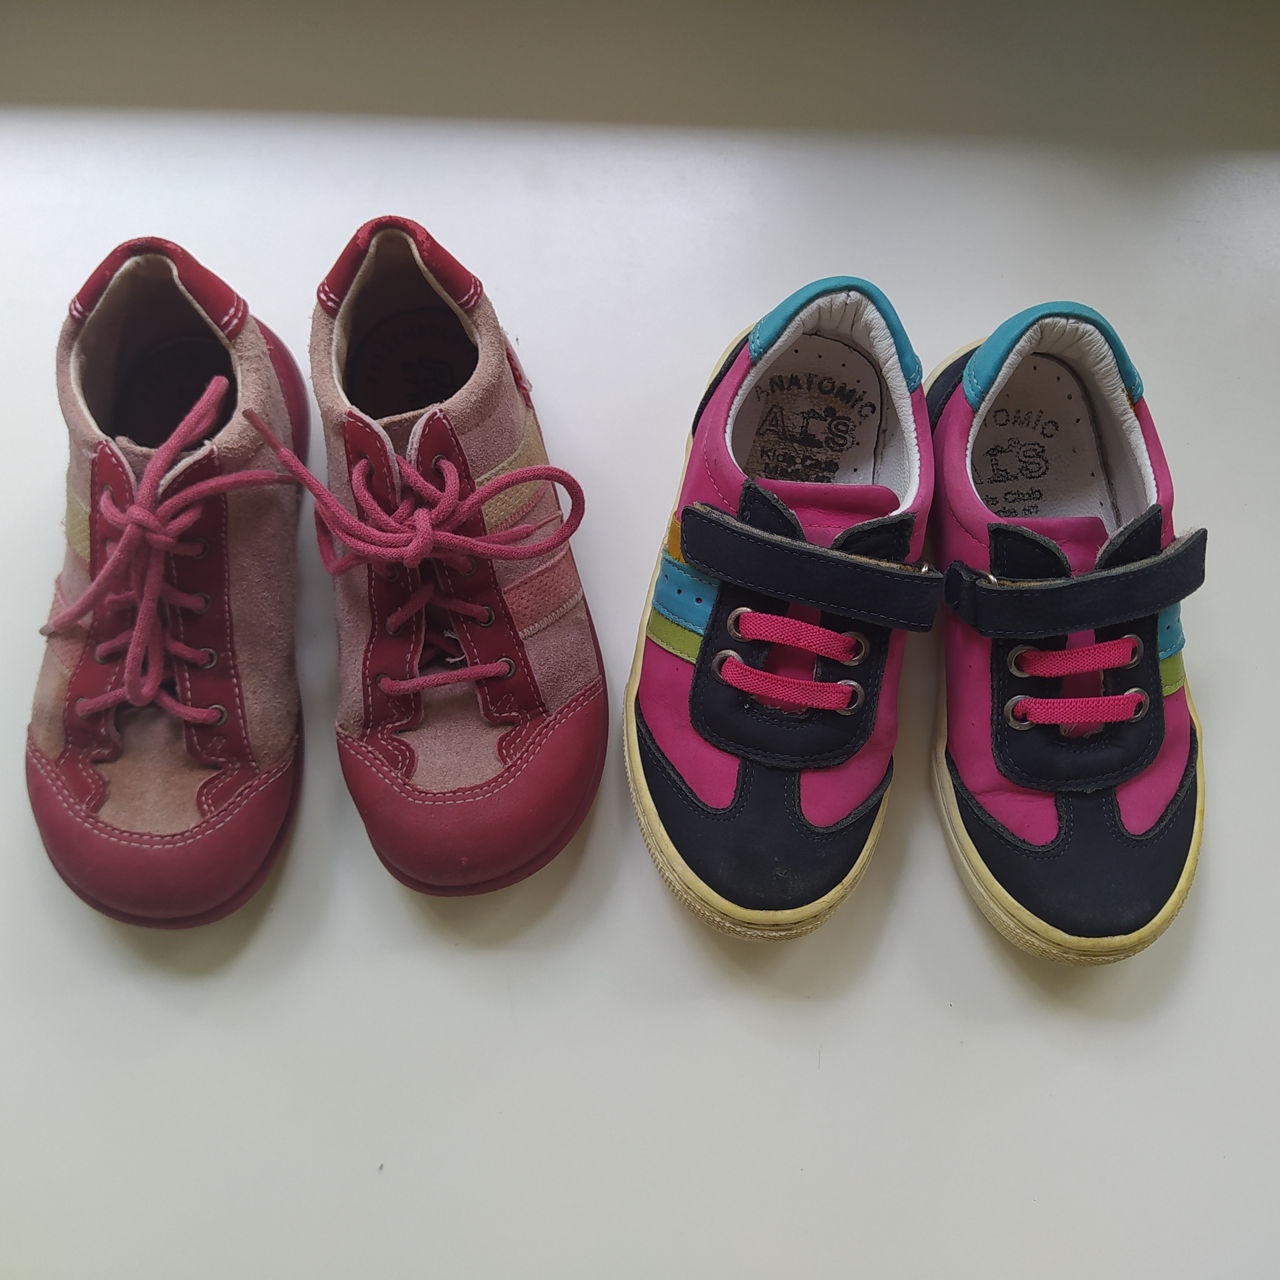 Обувь на осень 25, 27, 28 размер: кроссовки, ботинки, сапожки foto 10